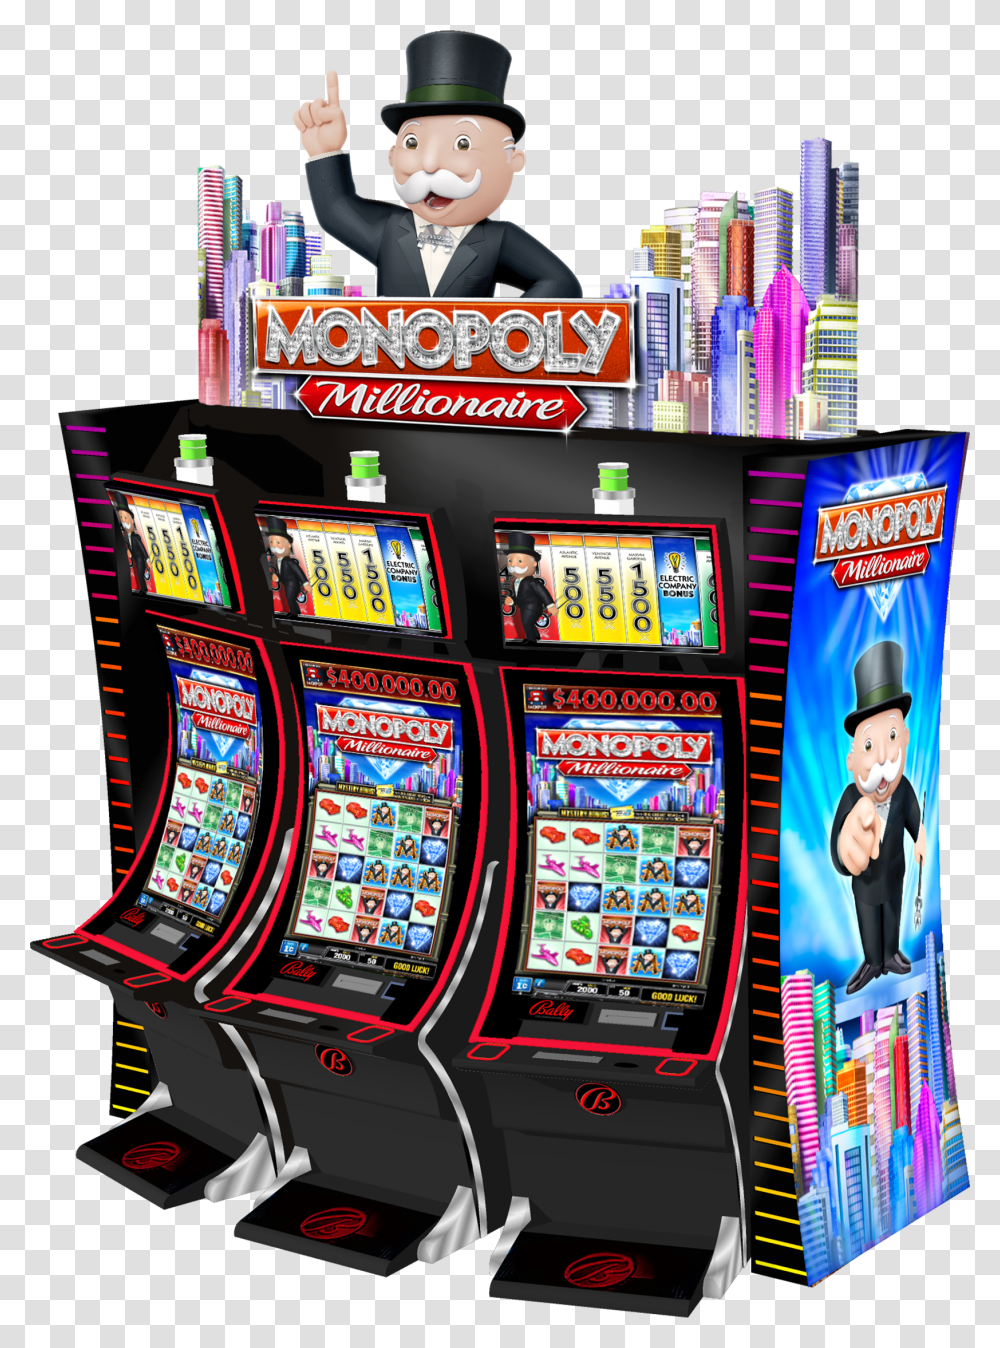 Slot Machine Scientific Games Monopoly Millionaire Slots, Person, Human, Gambling, Face Transparent Png